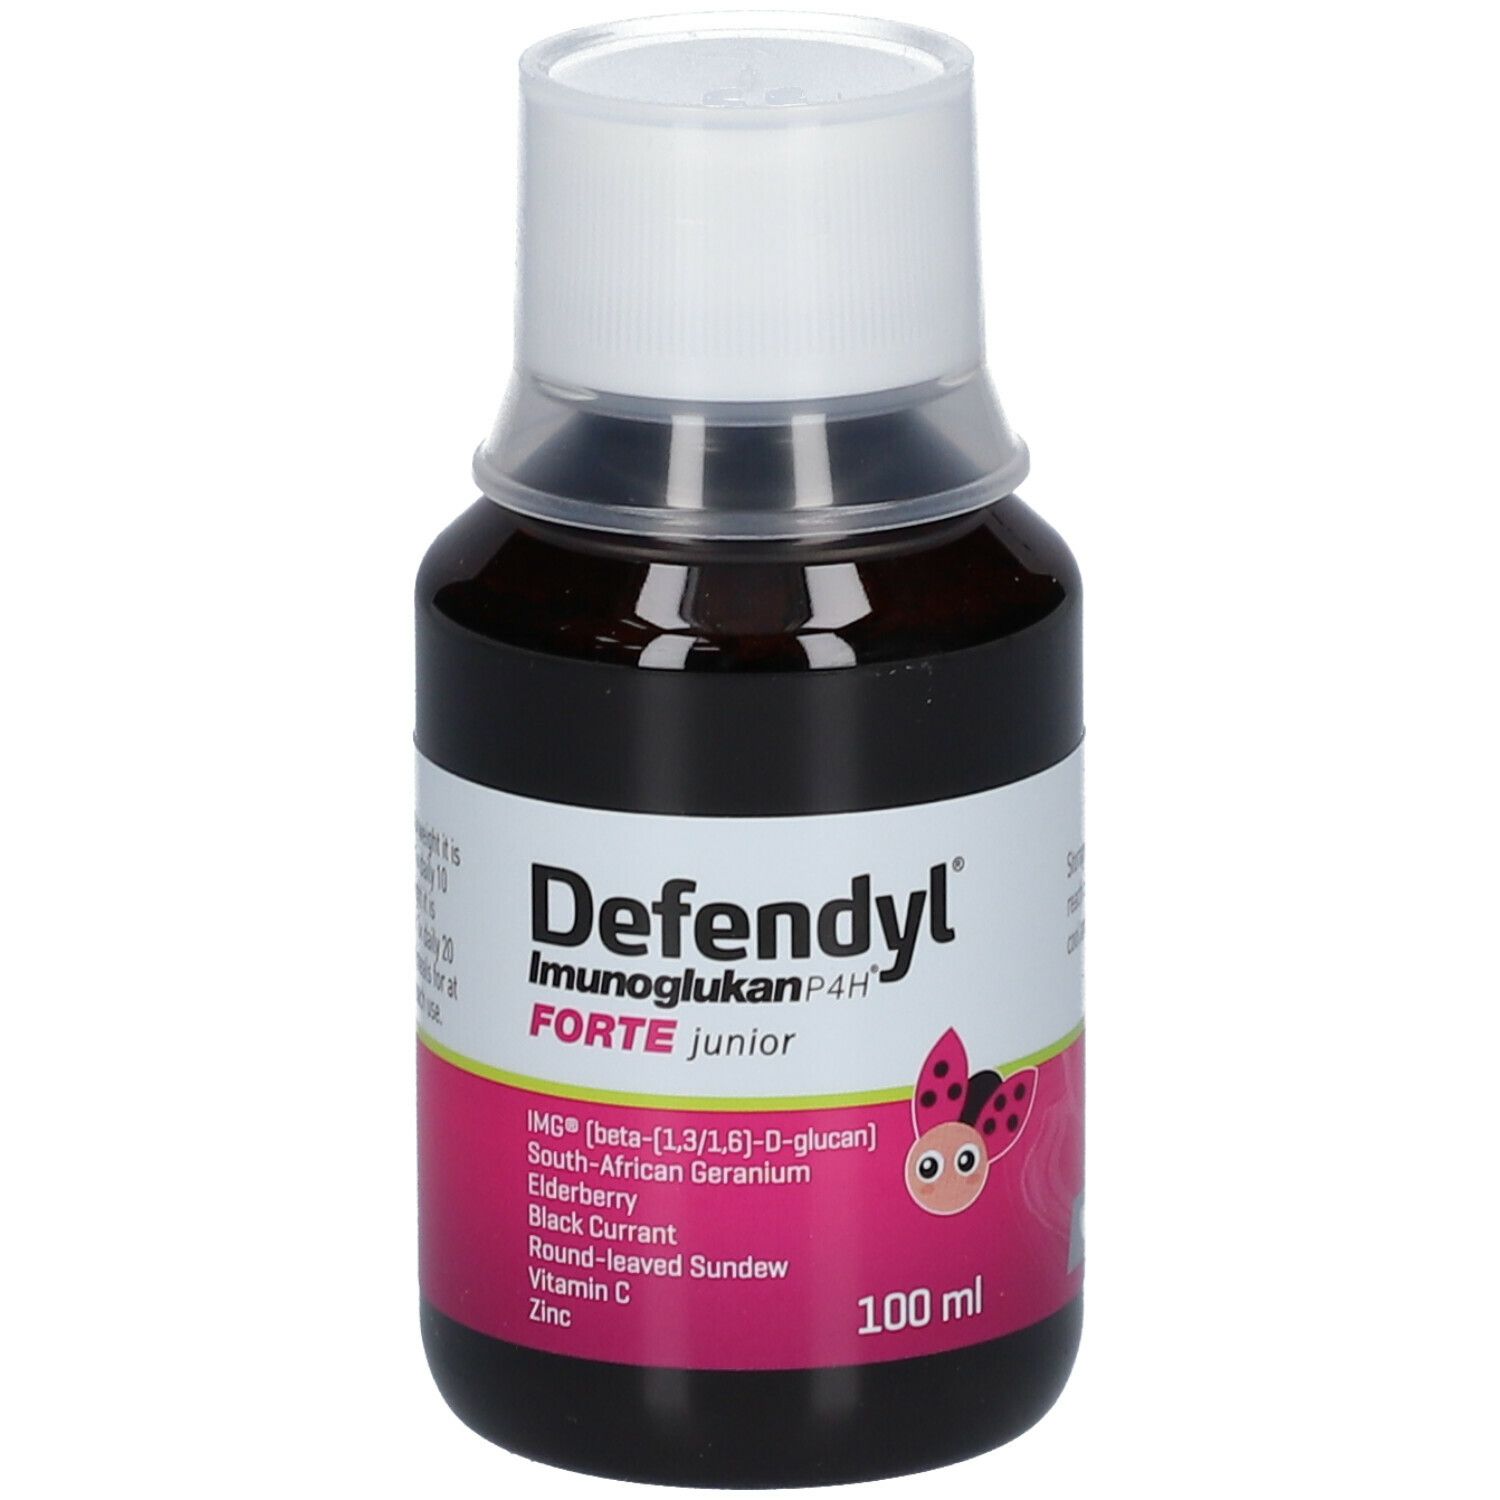 Defendyl® Imunoglukan P4H® Forte